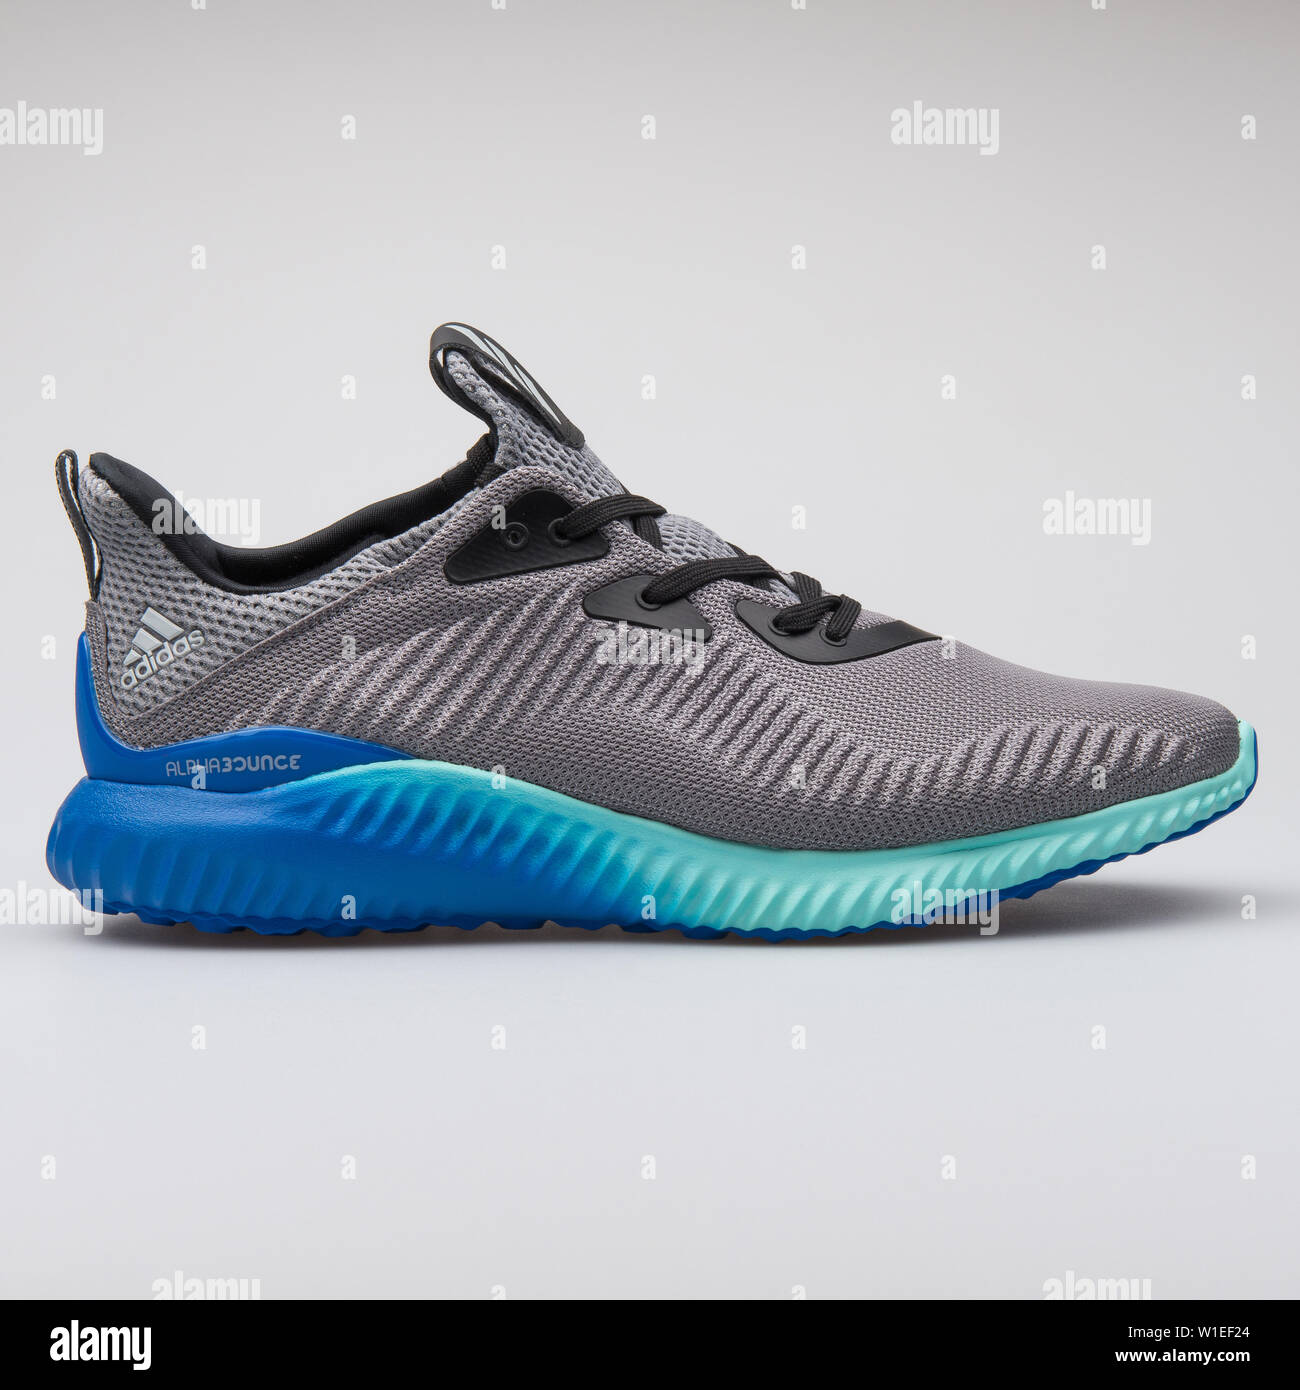 alphabounce adidas blue